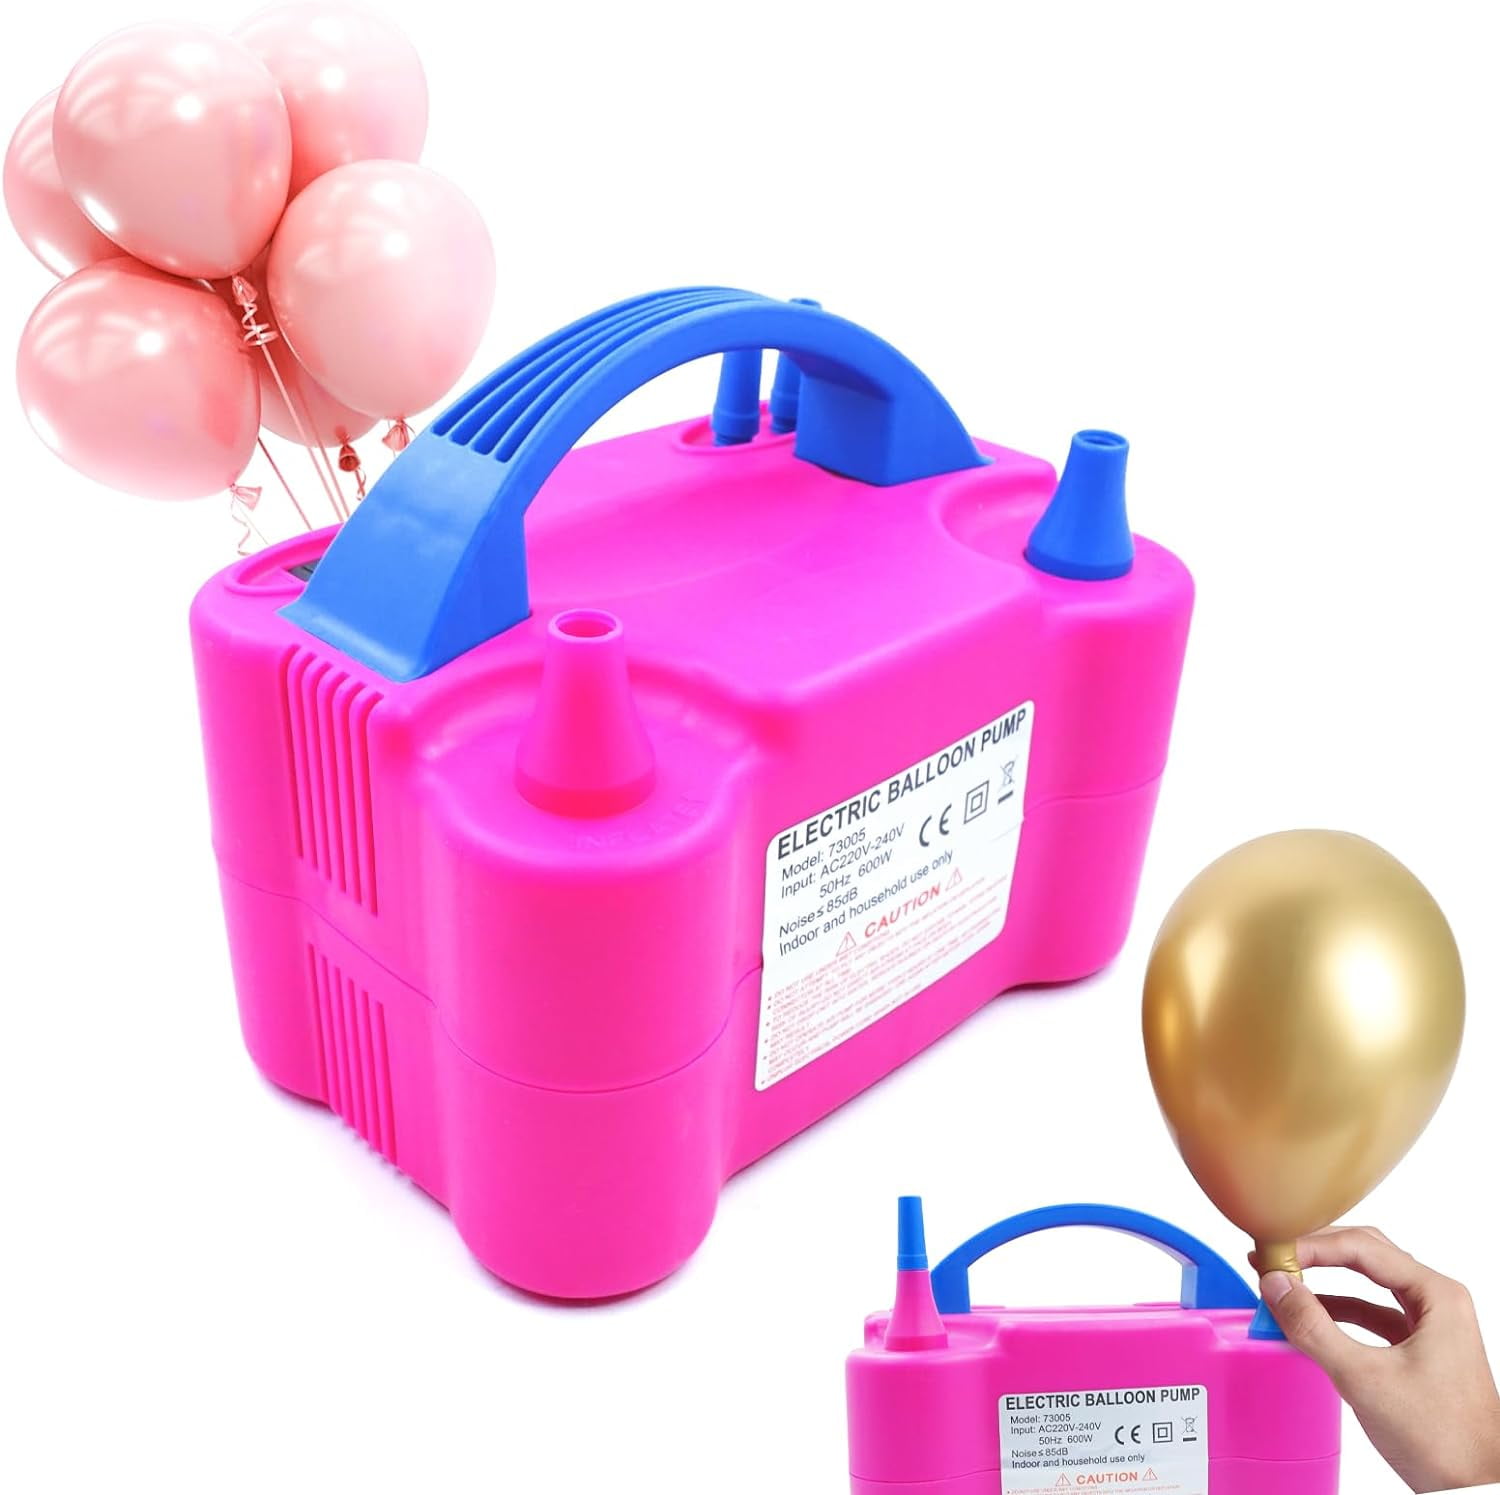 Electric balloon pump machine, Heavy duty balloon pump review